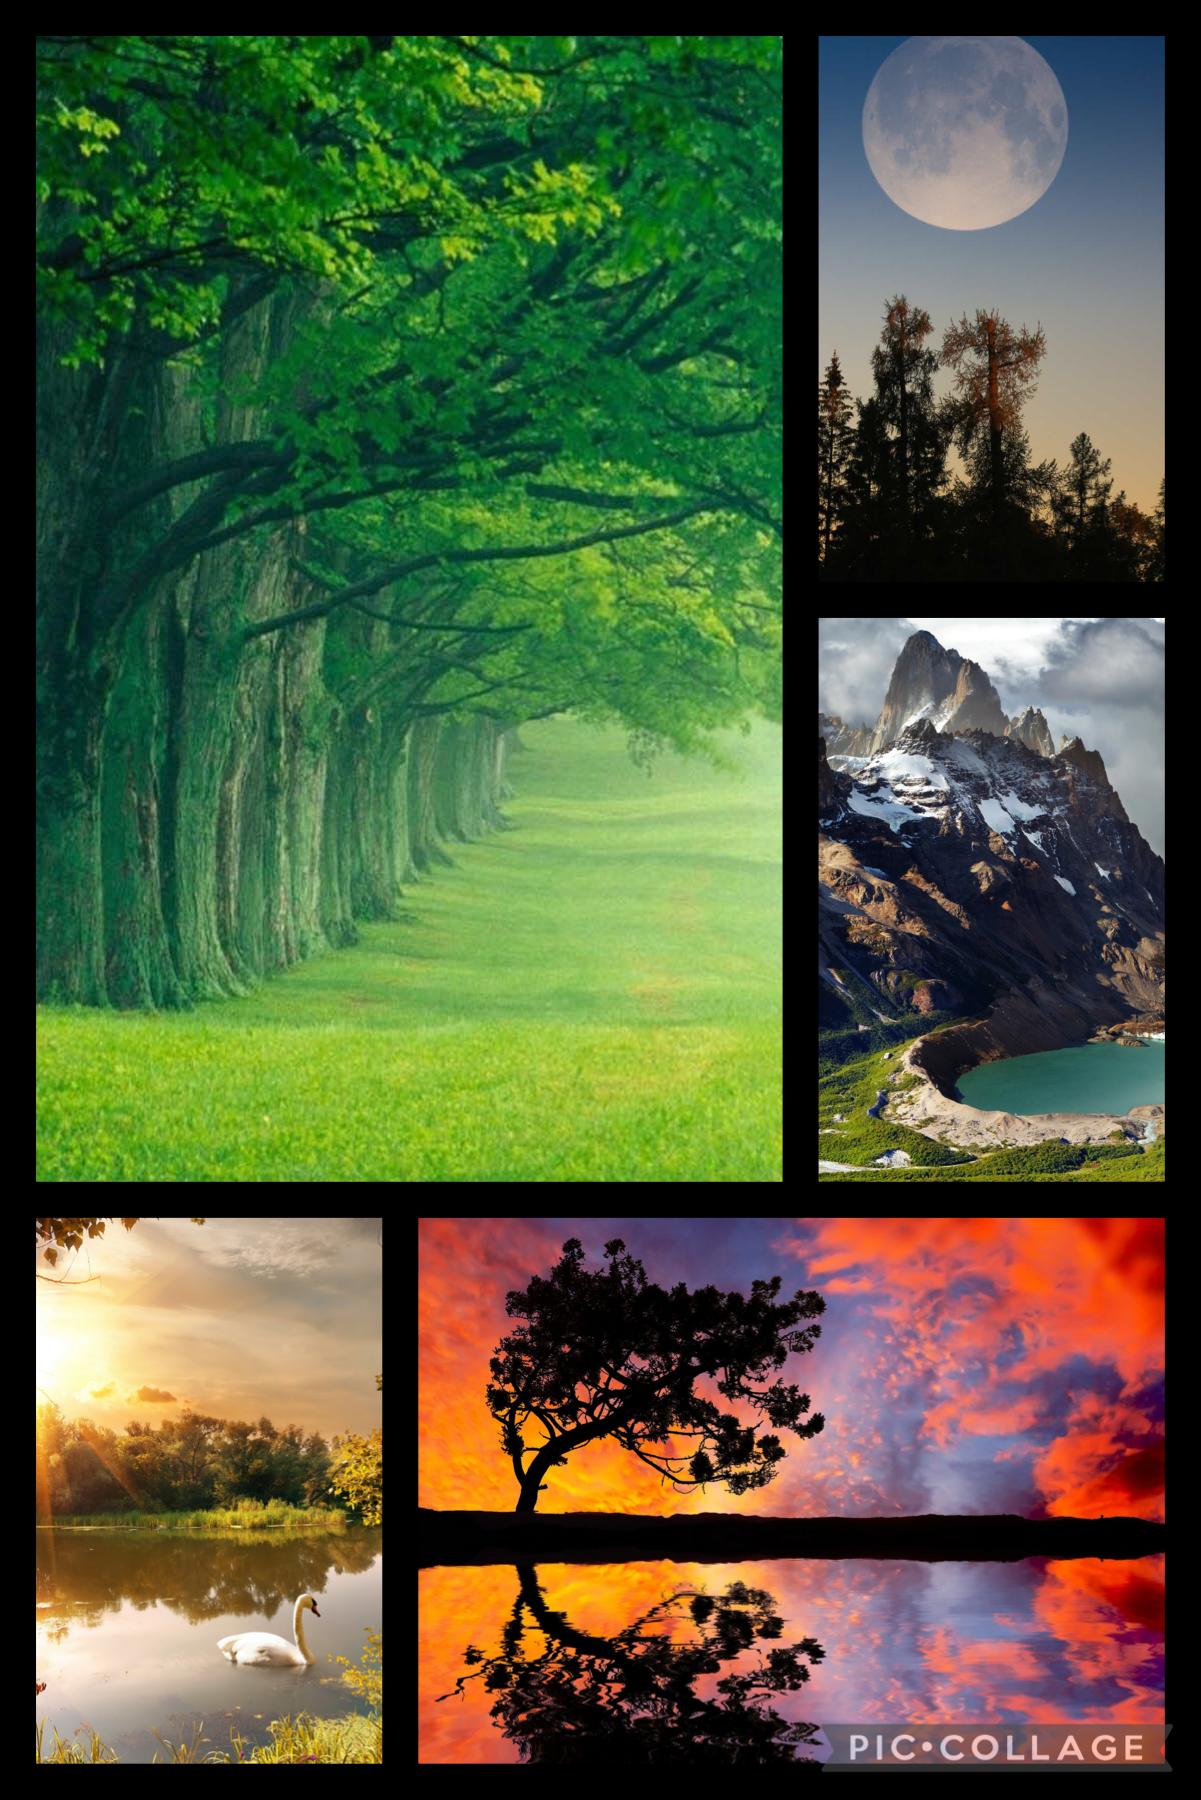 Amazing landscape pictures!